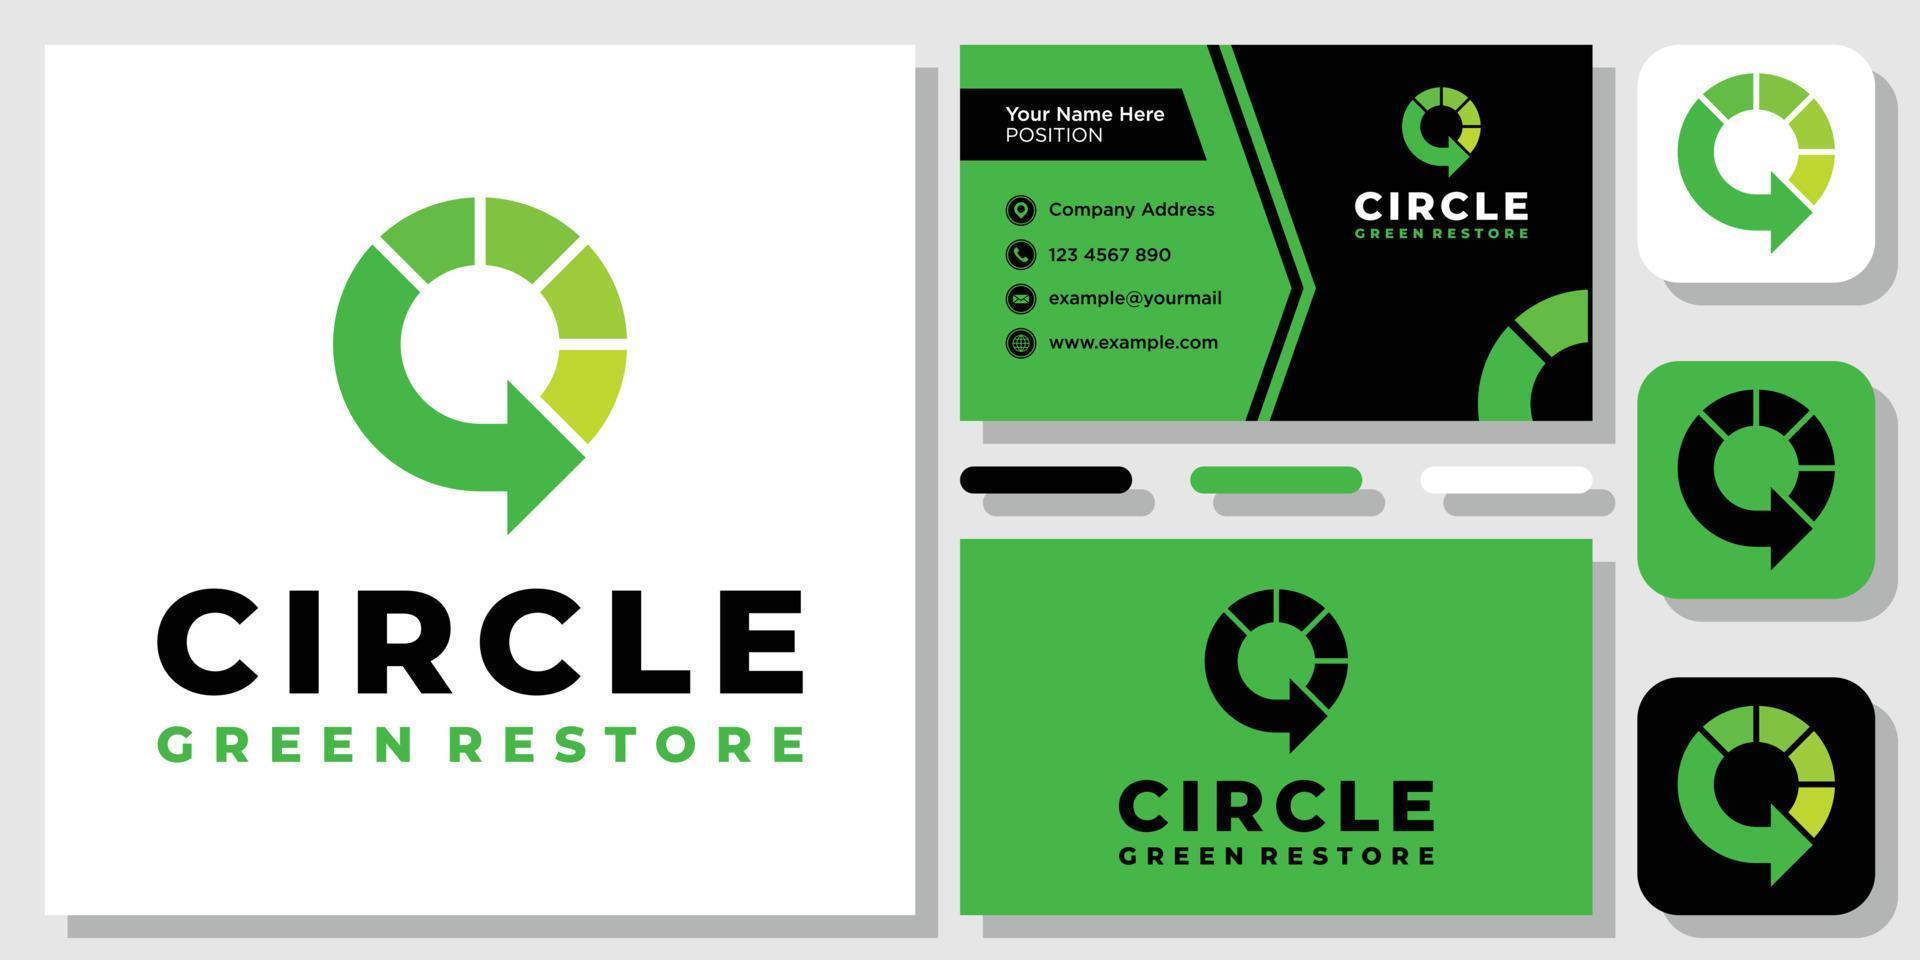 cirkel återvinning eco grön pil vänlig miljö logotyp design inspiration med layoutmall visitkort vektor